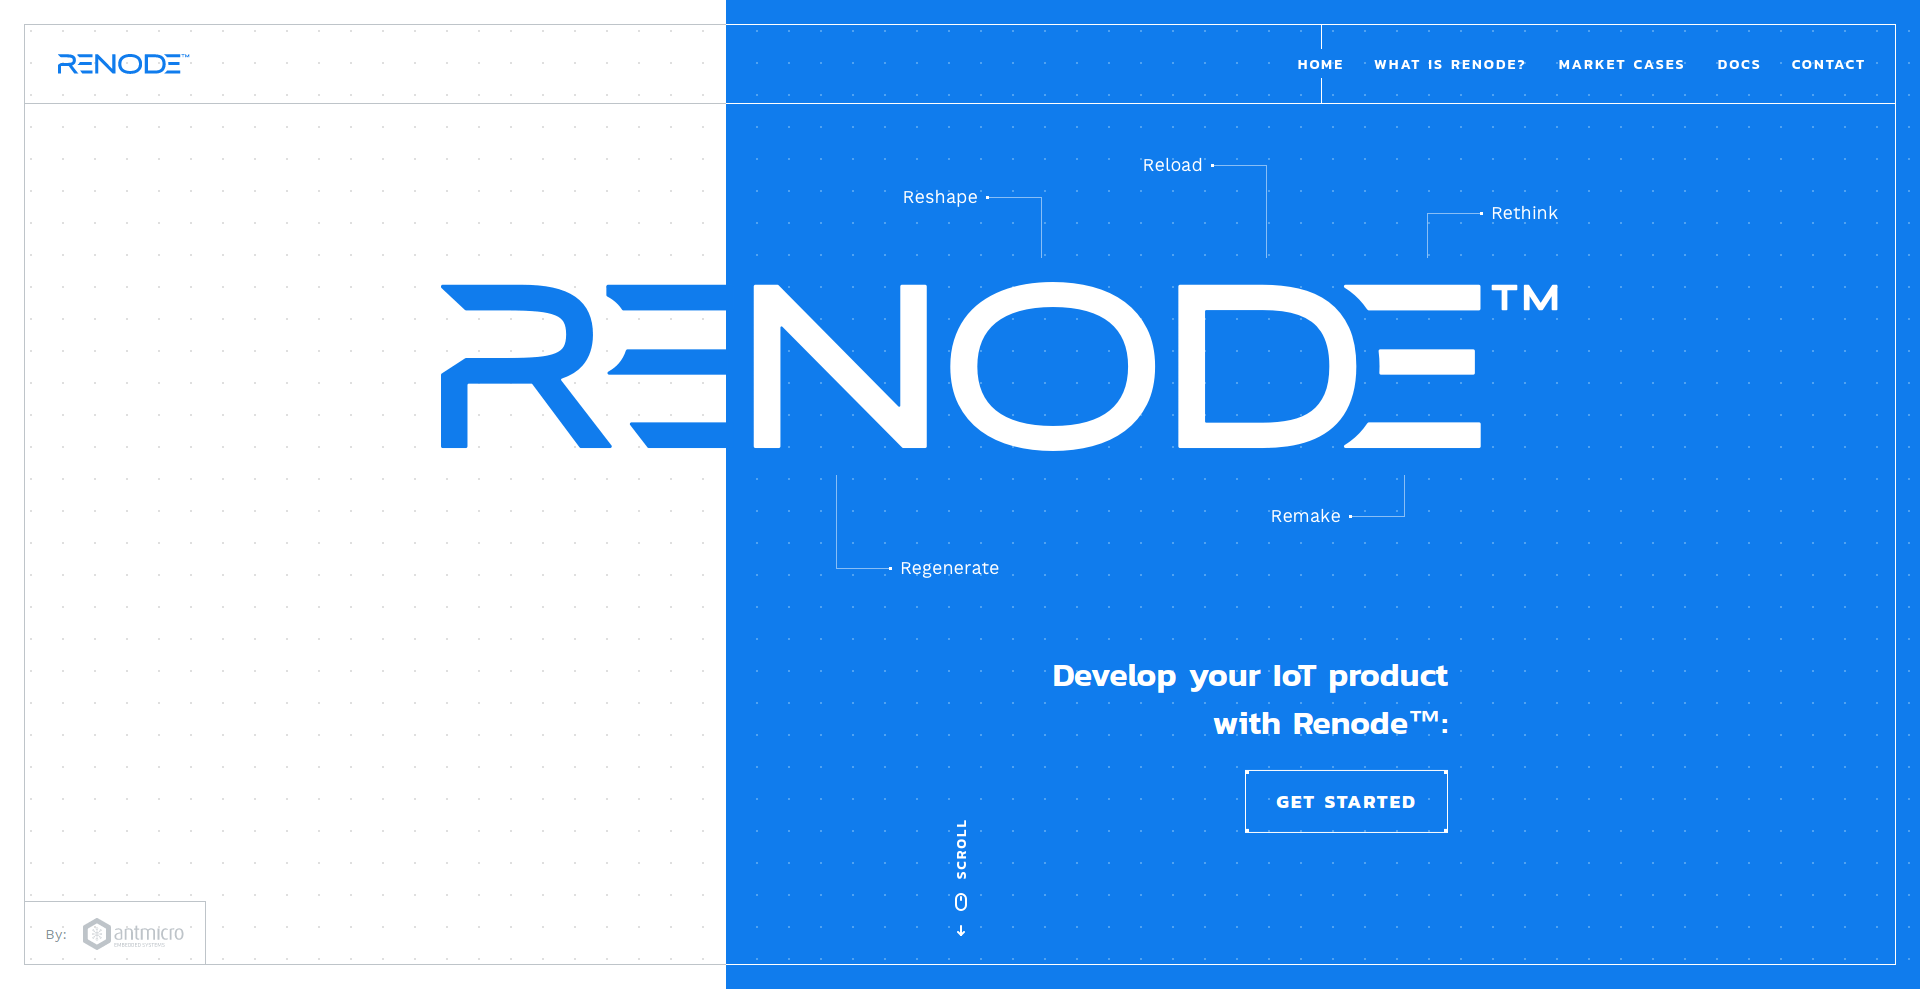 Renode website launched at the Barcelona RISC‑V Workshop